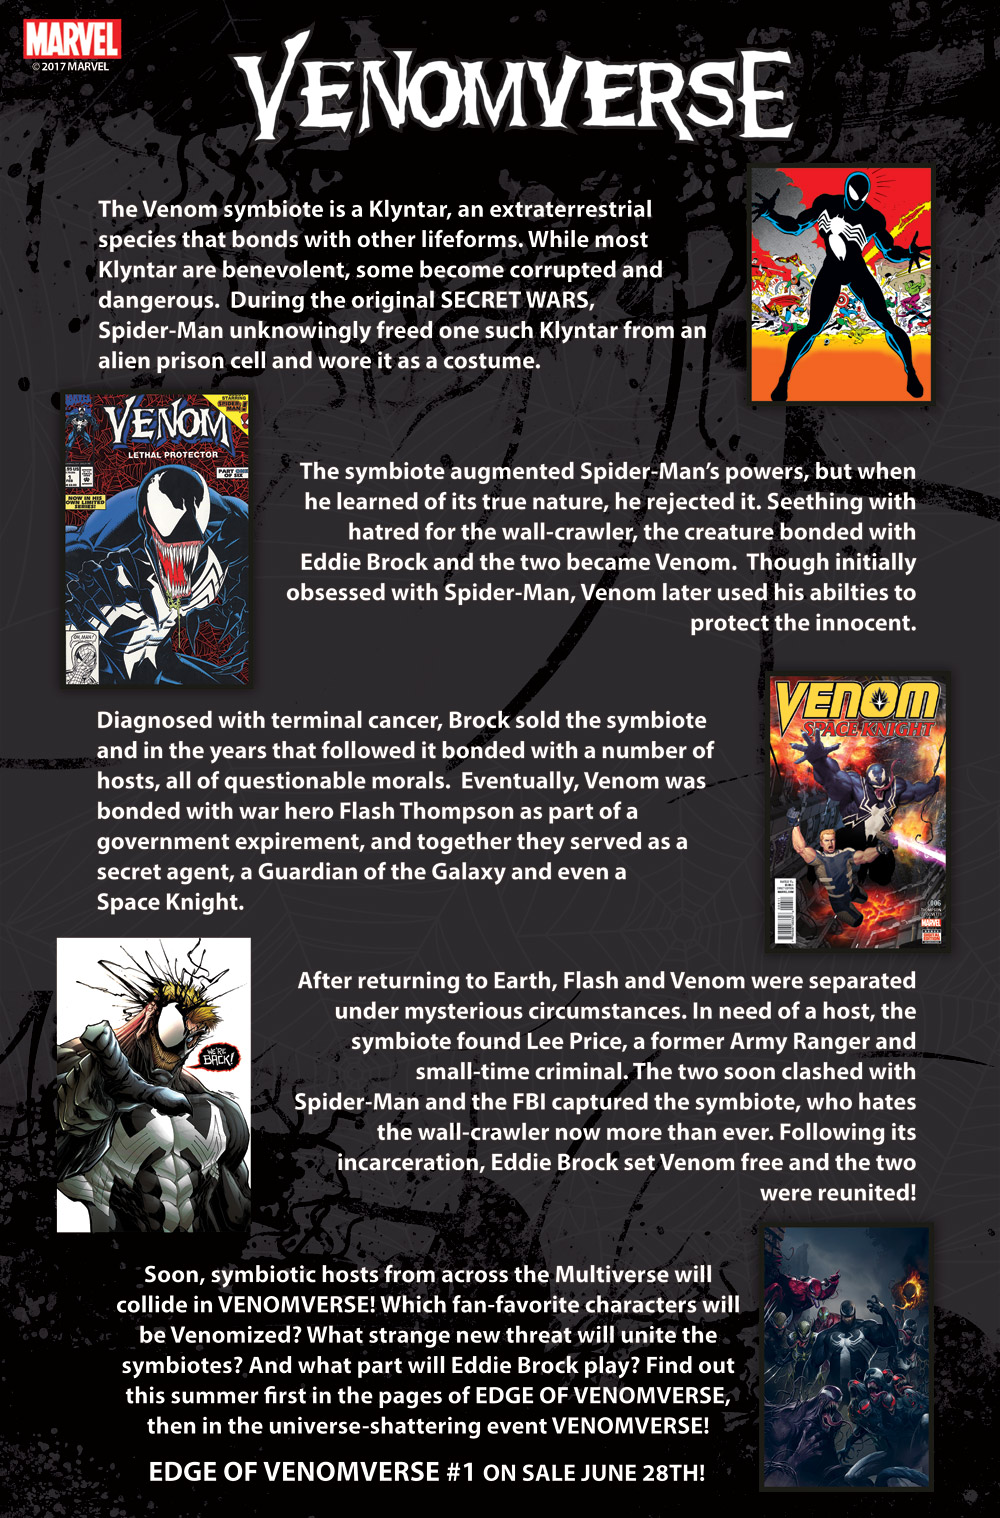 蜘蛛人死敵－ Venom 猛毒專屬的漫畫故事《 Venomverse 猛毒宇宙》最新報導